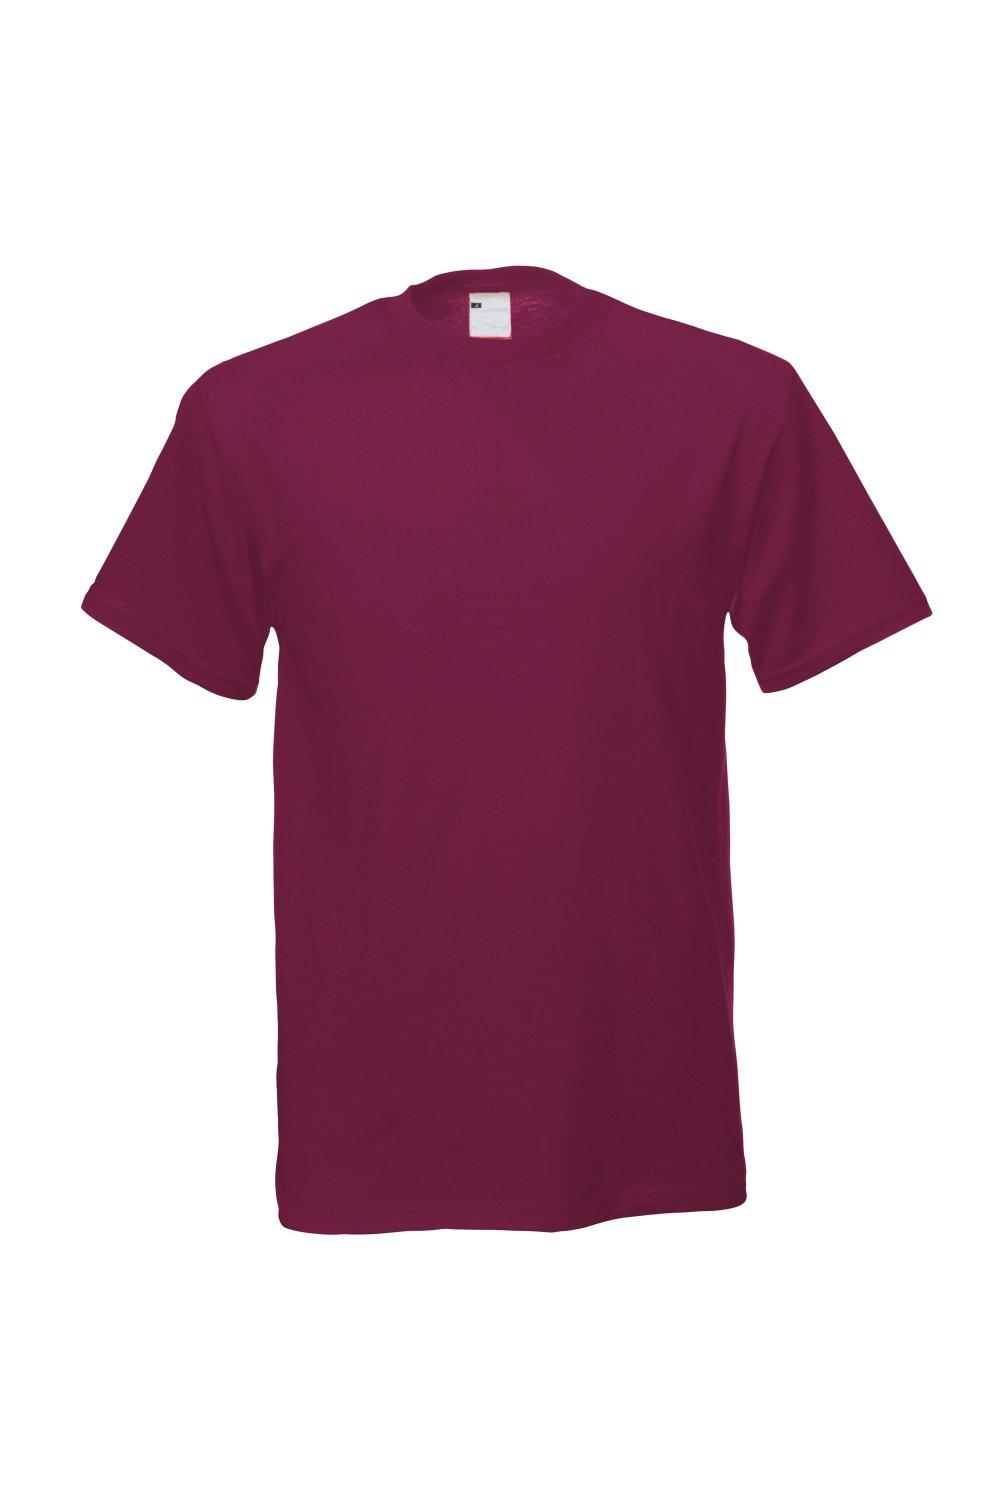 Повседневная футболка с коротким рукавом Universal Textiles, красный мужская футболка ретро кассета 2xl серый меланж